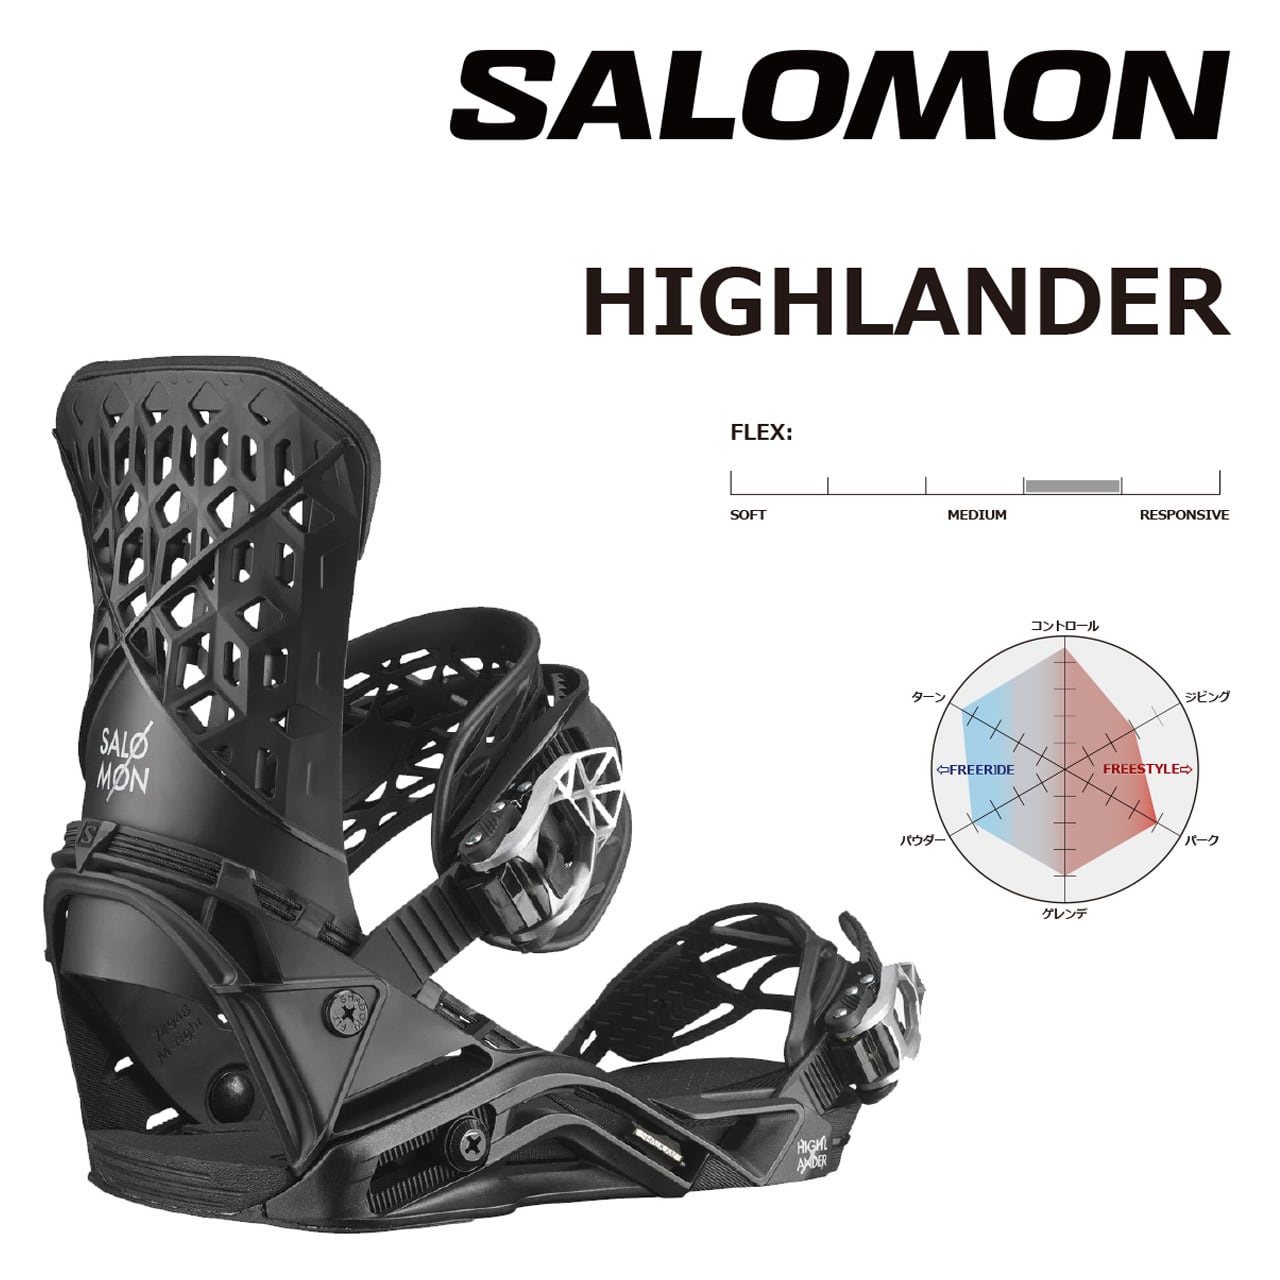 SALOMON HIGHLANDER-landell.mx